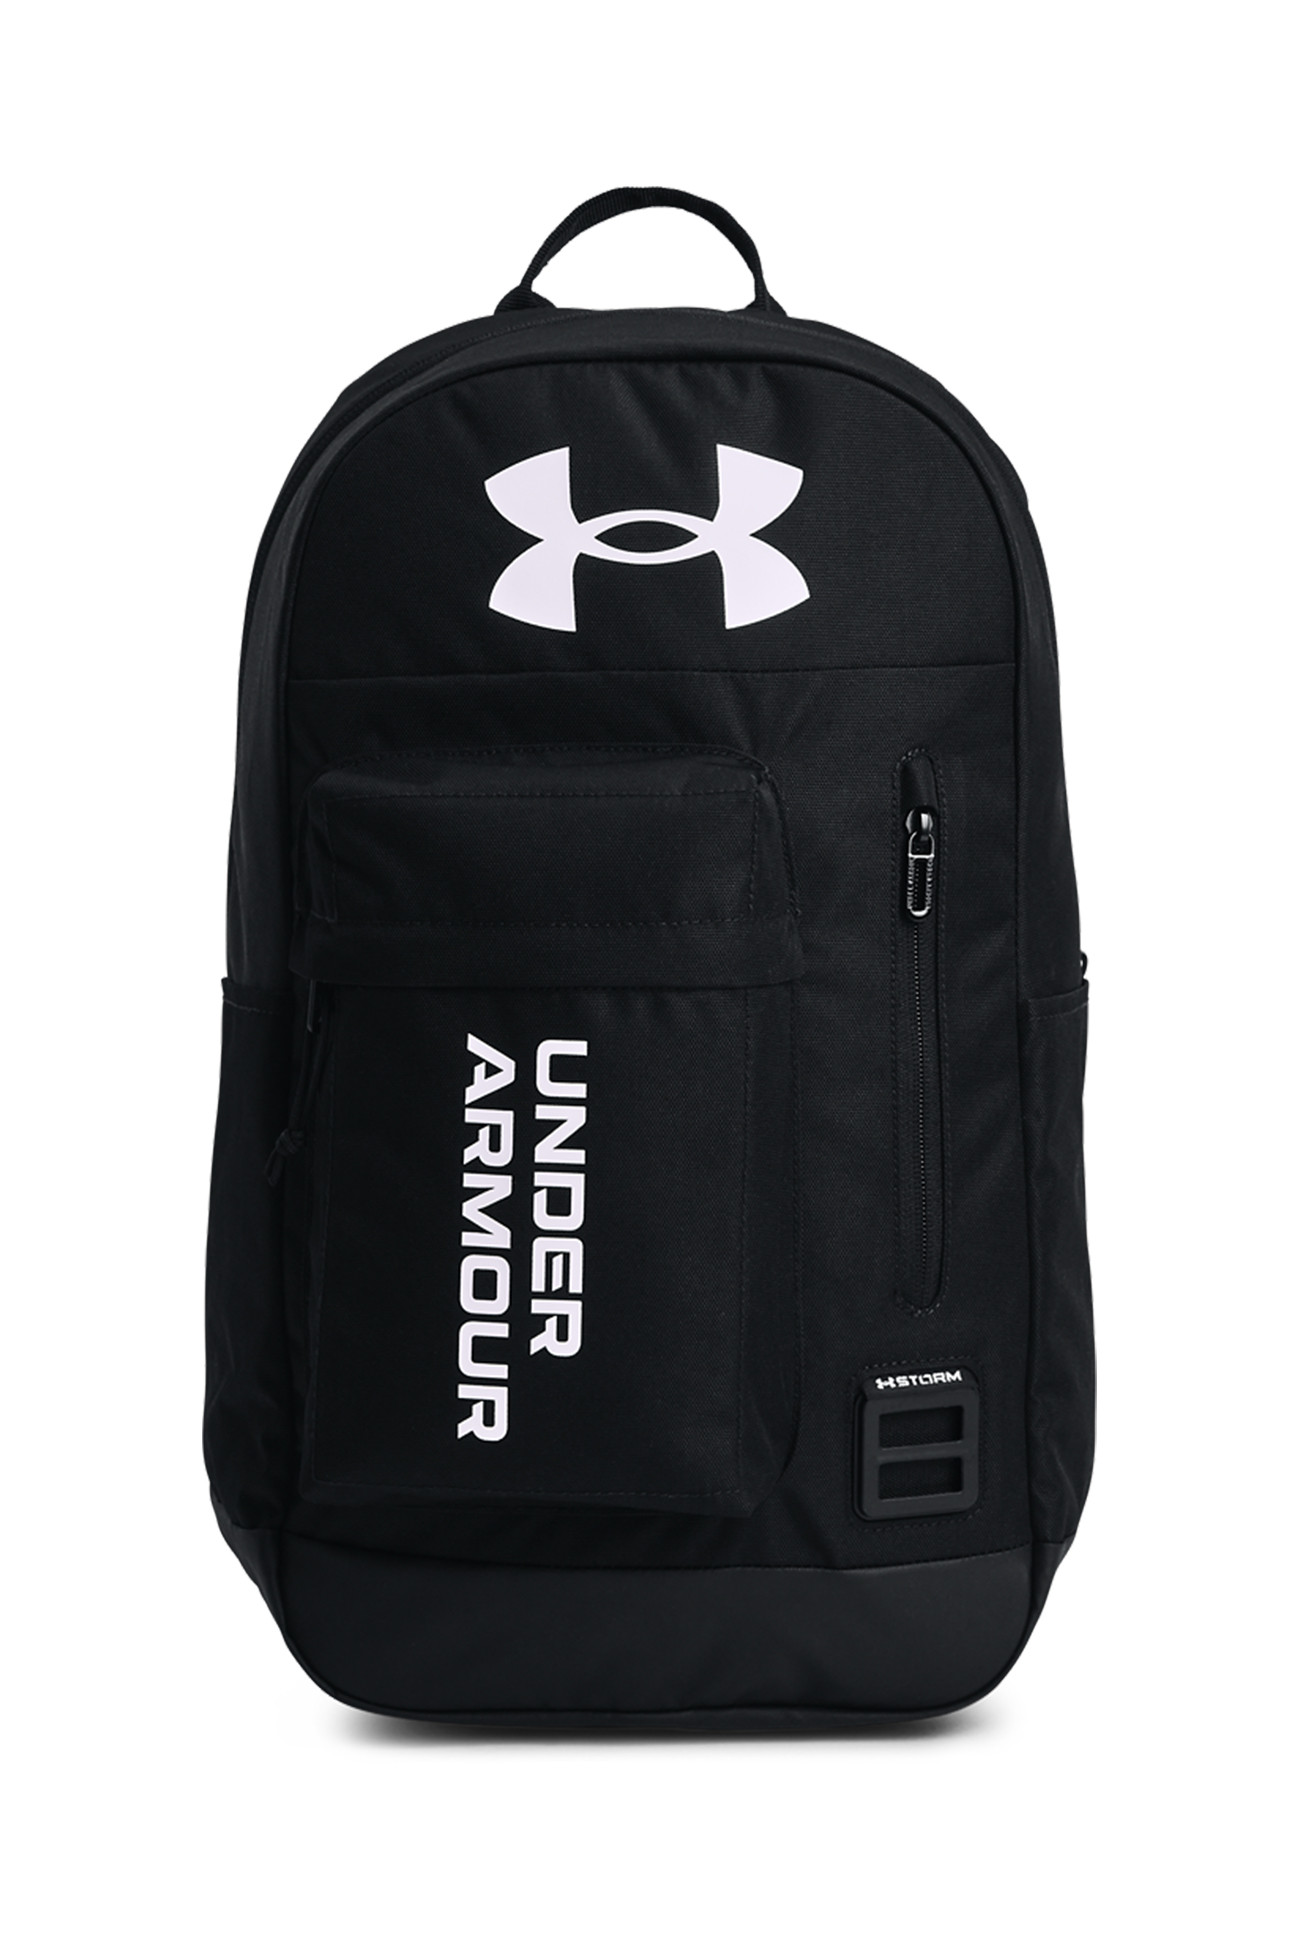 Рюкзак Under Armour UA Halftime Backpack черный 1362365-001 изображение 2